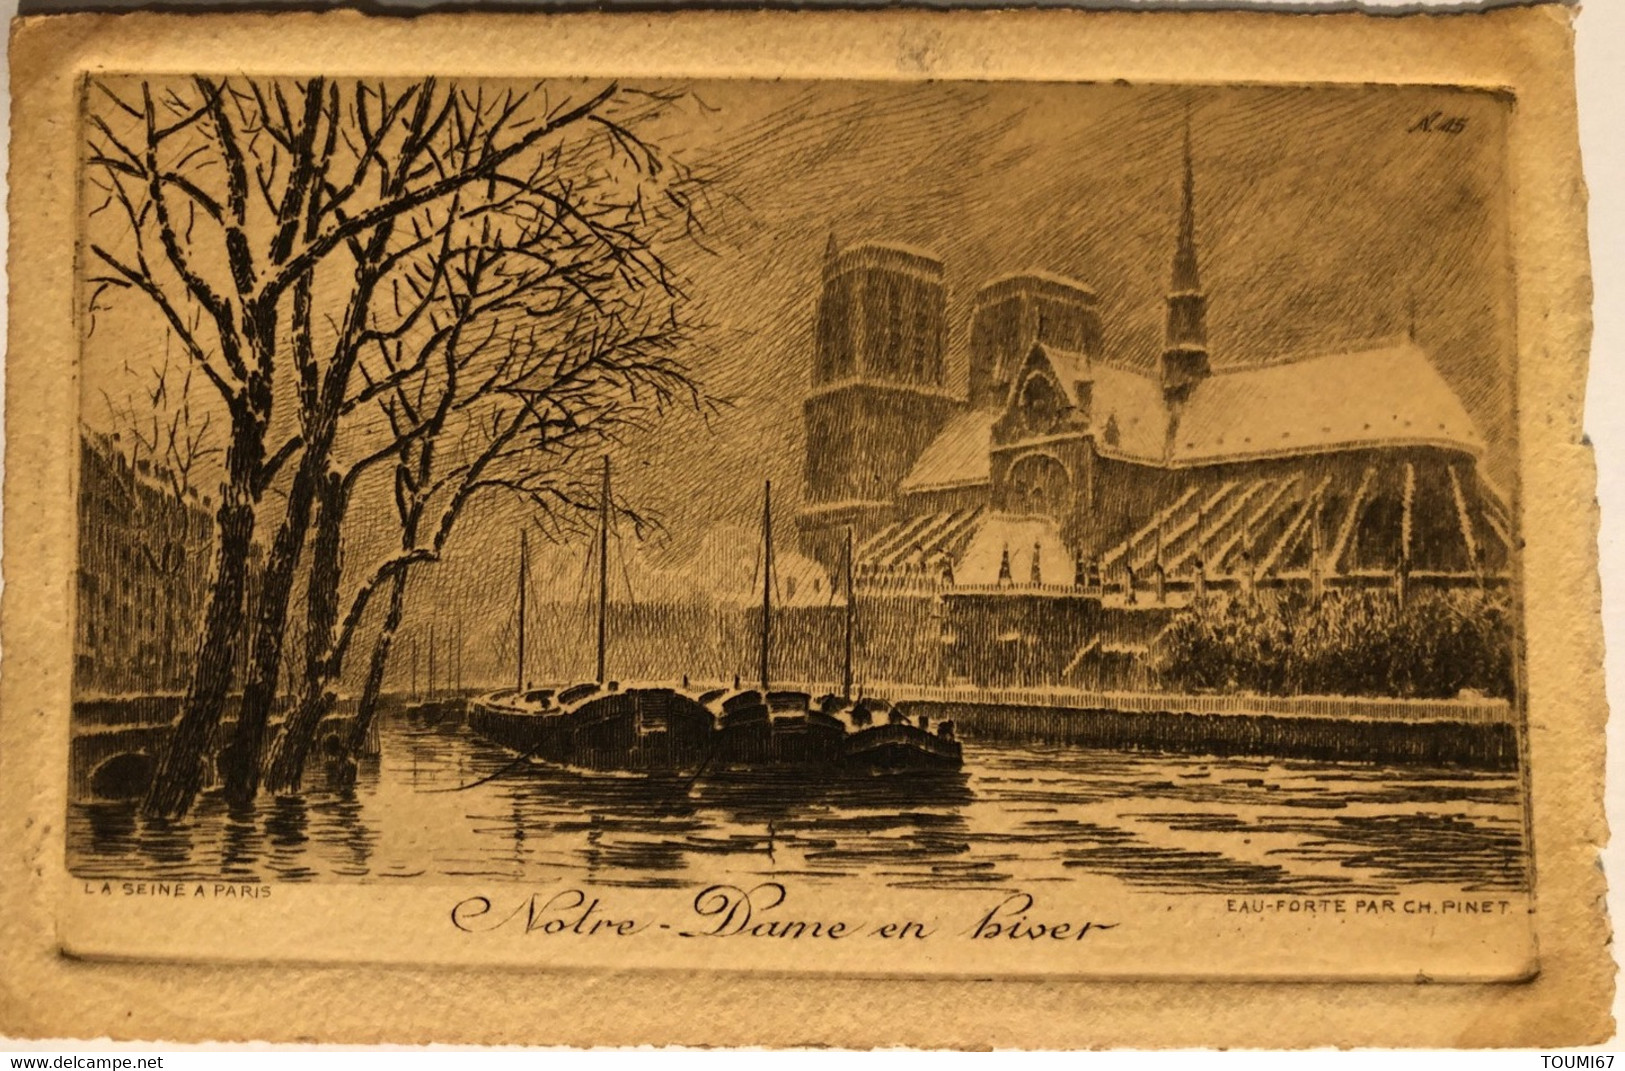 ANCIEN PARIS Lot de 20 cartes postales